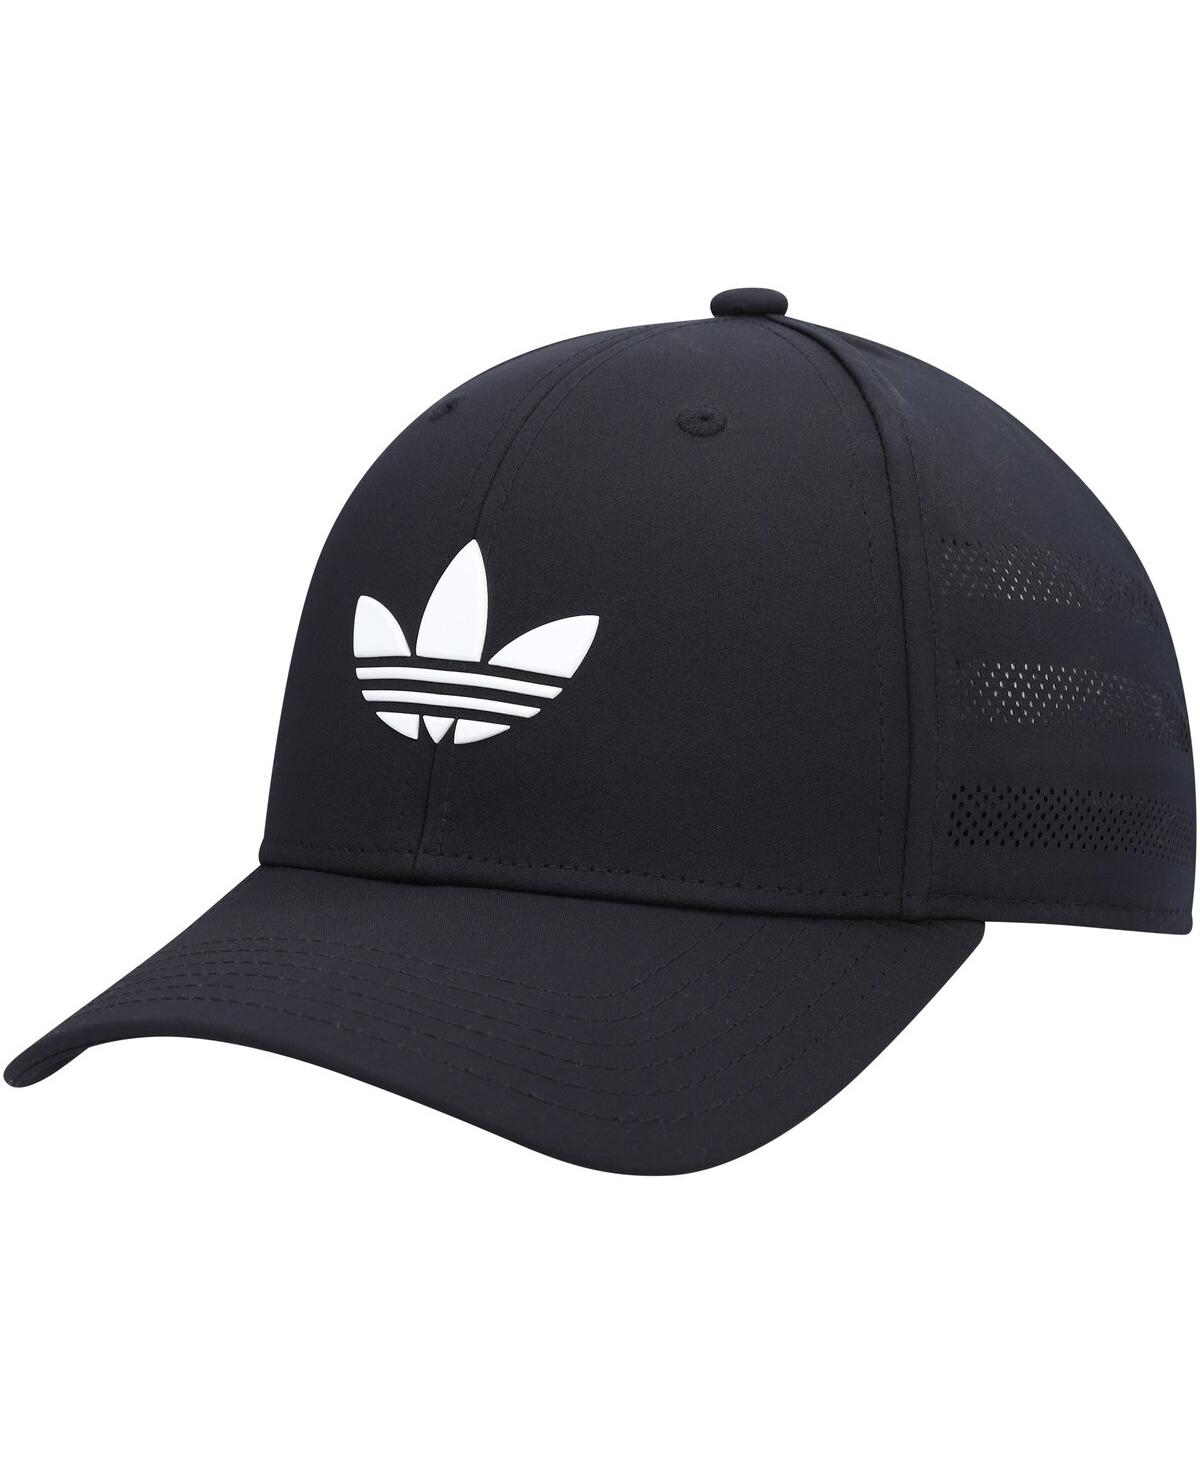 Adidas Originals Adidas Men's Originals Beacon Snapback Hat In Black/white